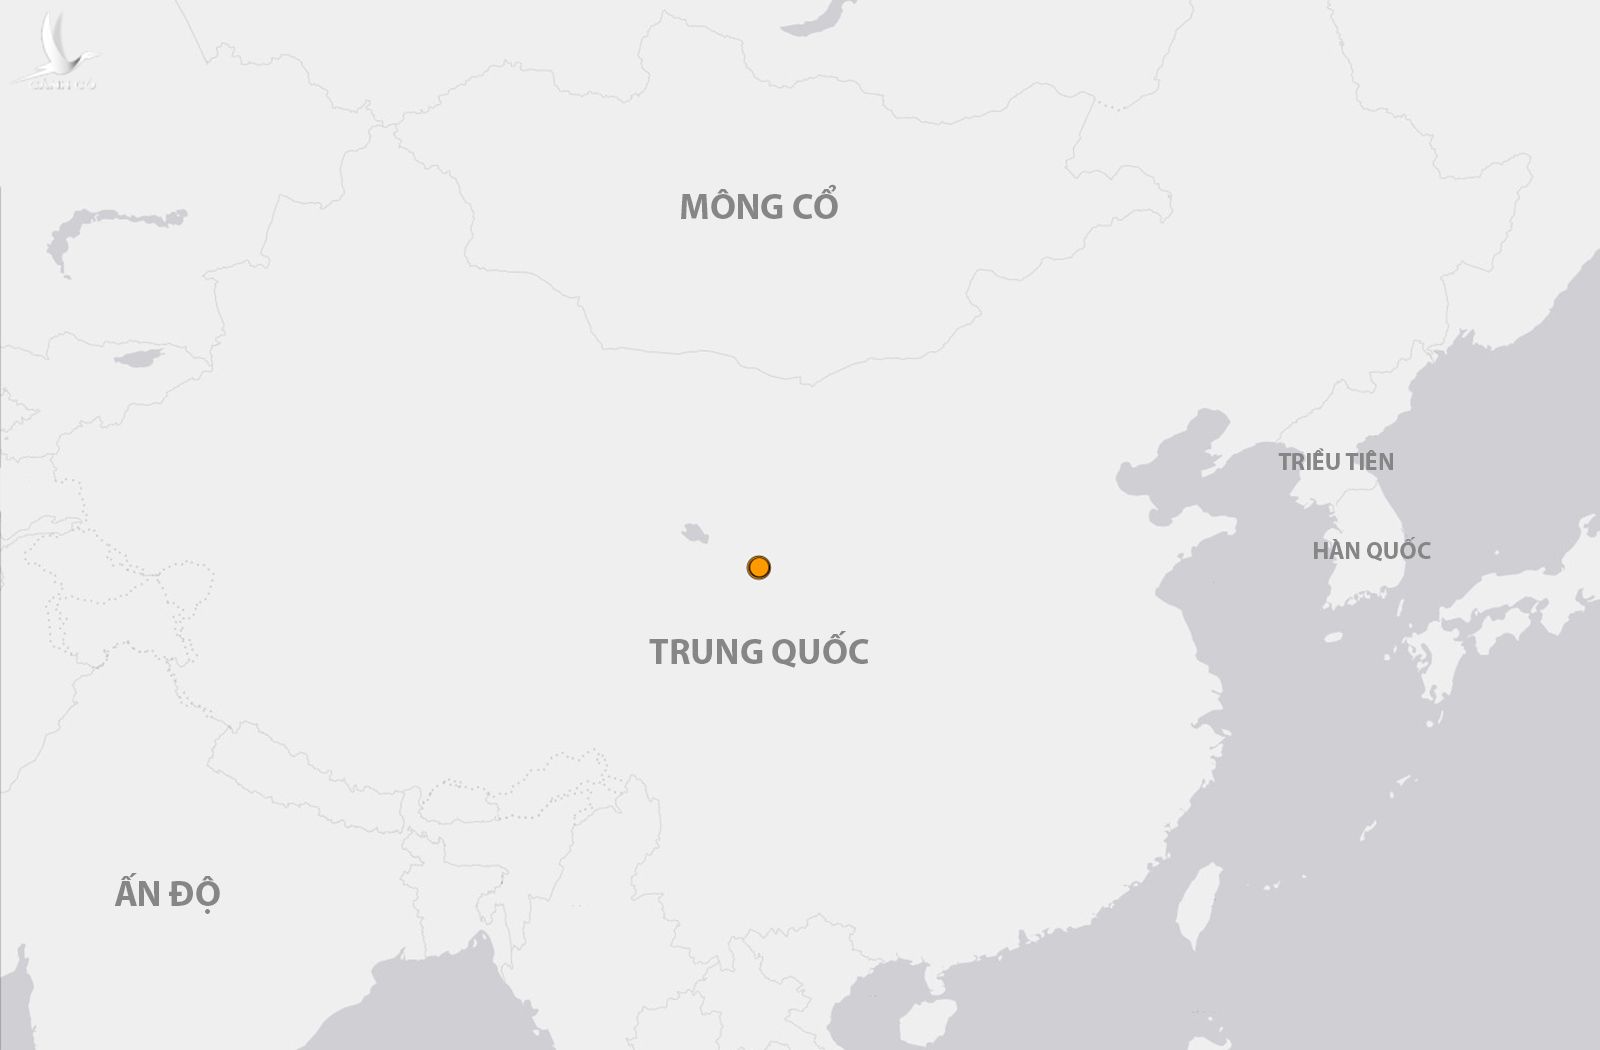 Vị trí trận động đất tại tỉnh Cam Túc, Trung Quốc ngày 18/12 (chấm màu cam).